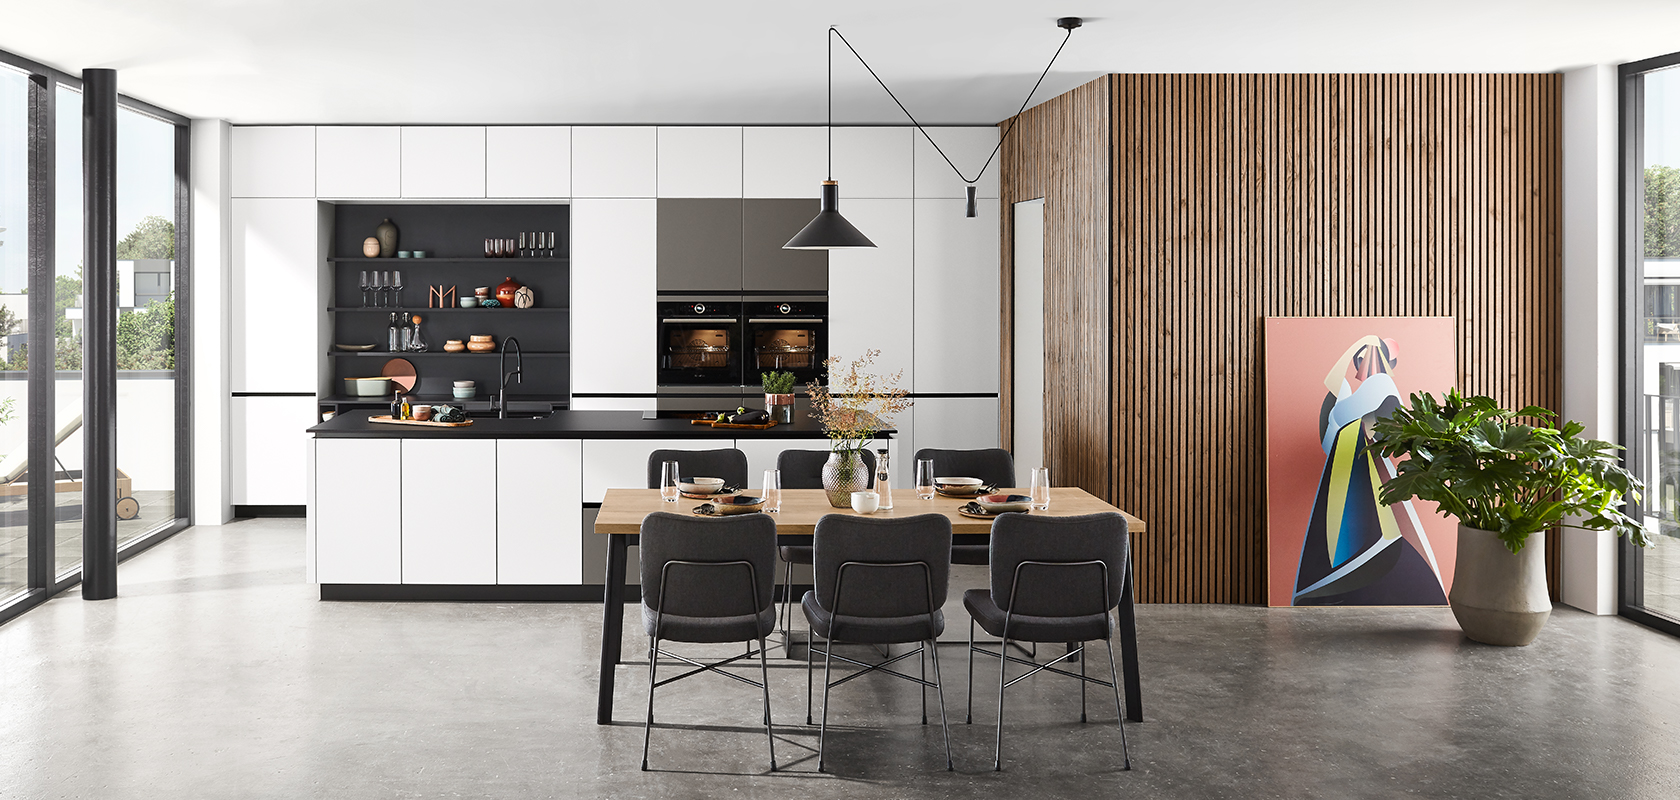 Interni di cucina moderna con mobili eleganti neri e bianchi, accenti in legno e un'area pranzo con mobili eleganti sotto eleganti luci a sospensione.